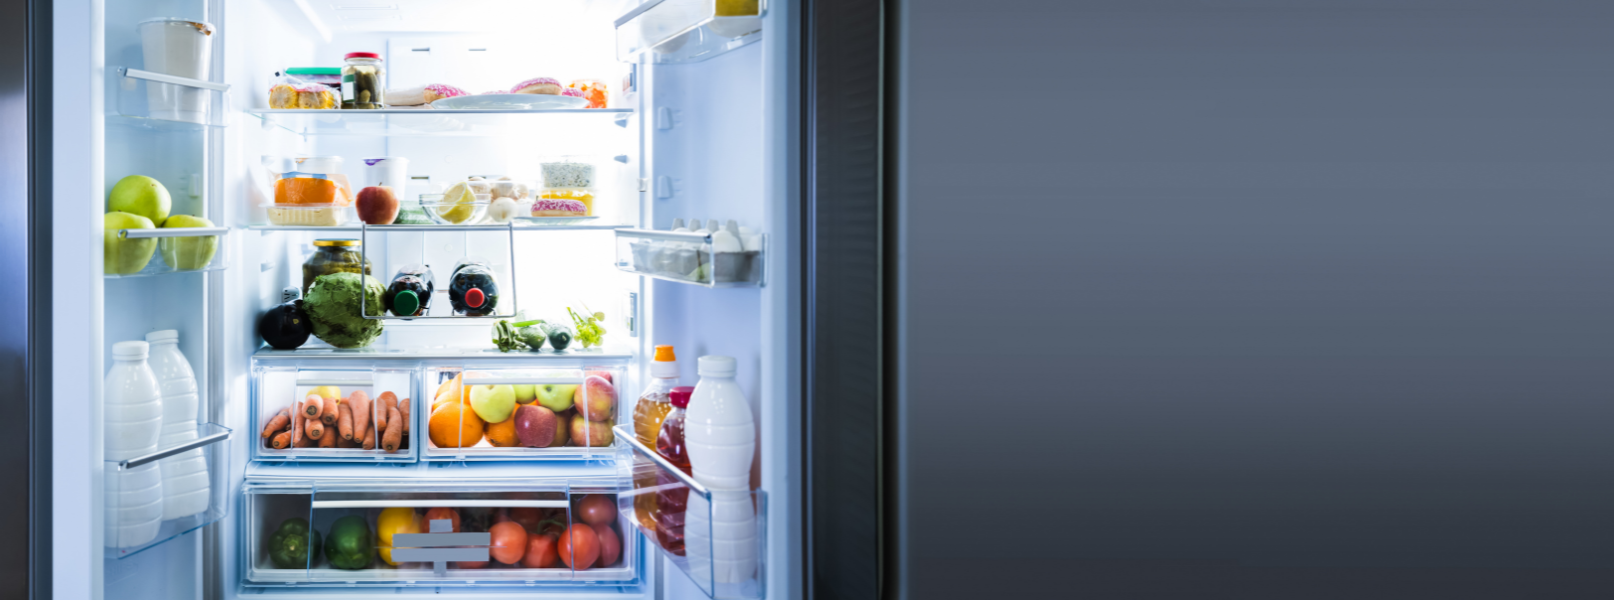 fridge freezer feature image